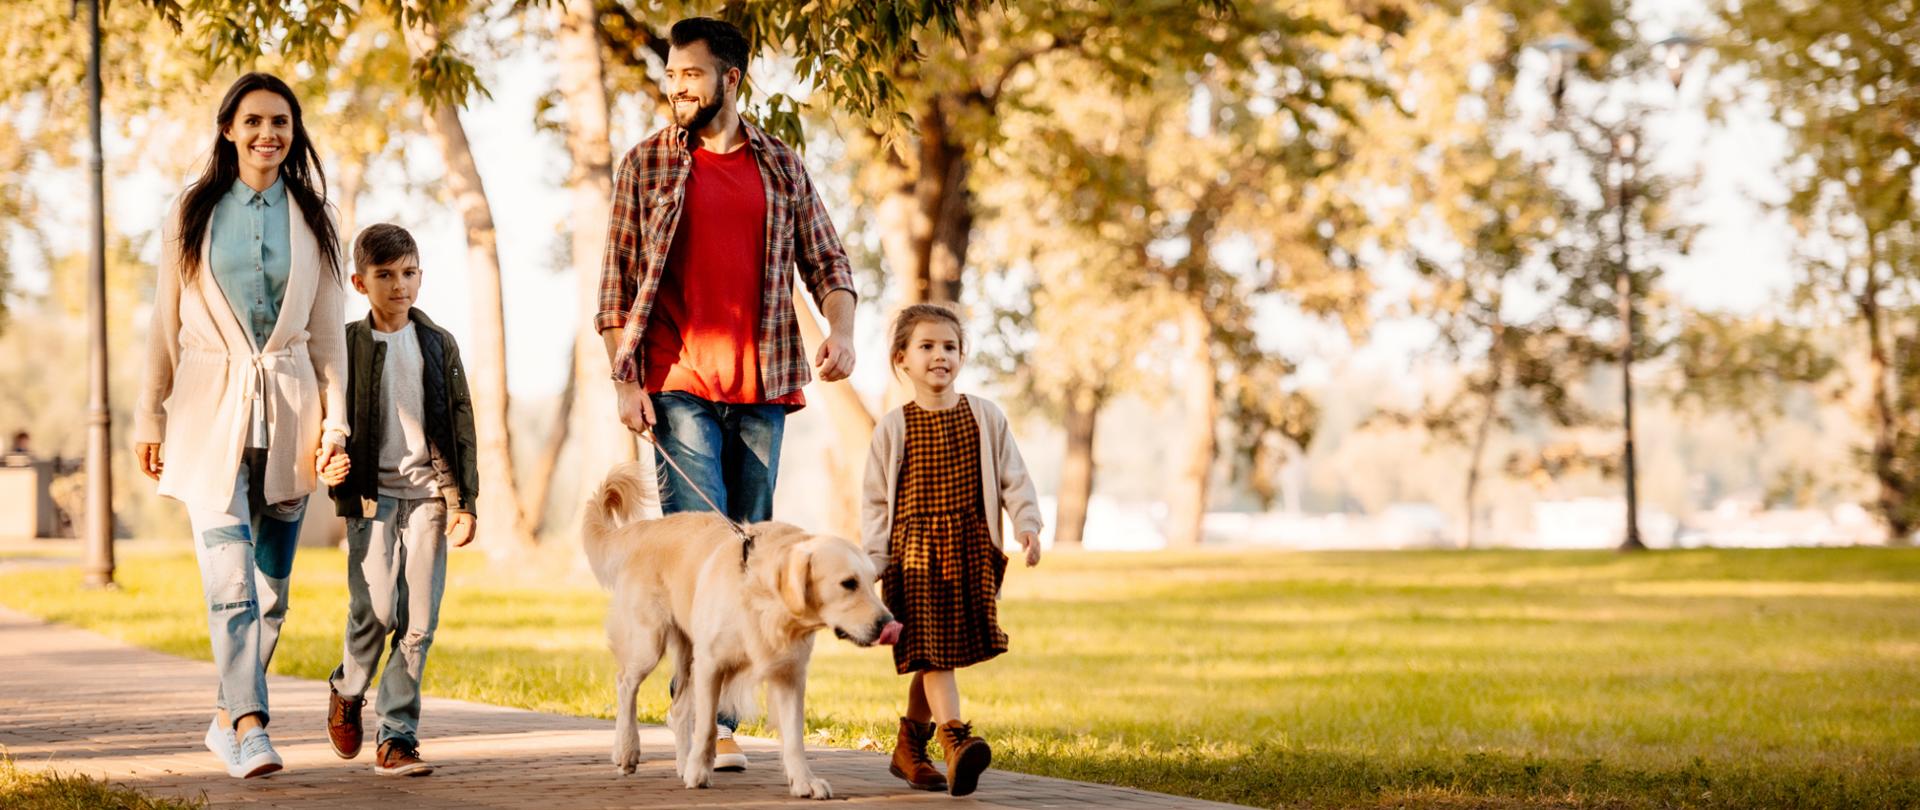 Na zdjęciu jest rodzina - mama, tata, brat i siostra. Tata prowadzi psa. Rodzina znajduje się w parku.